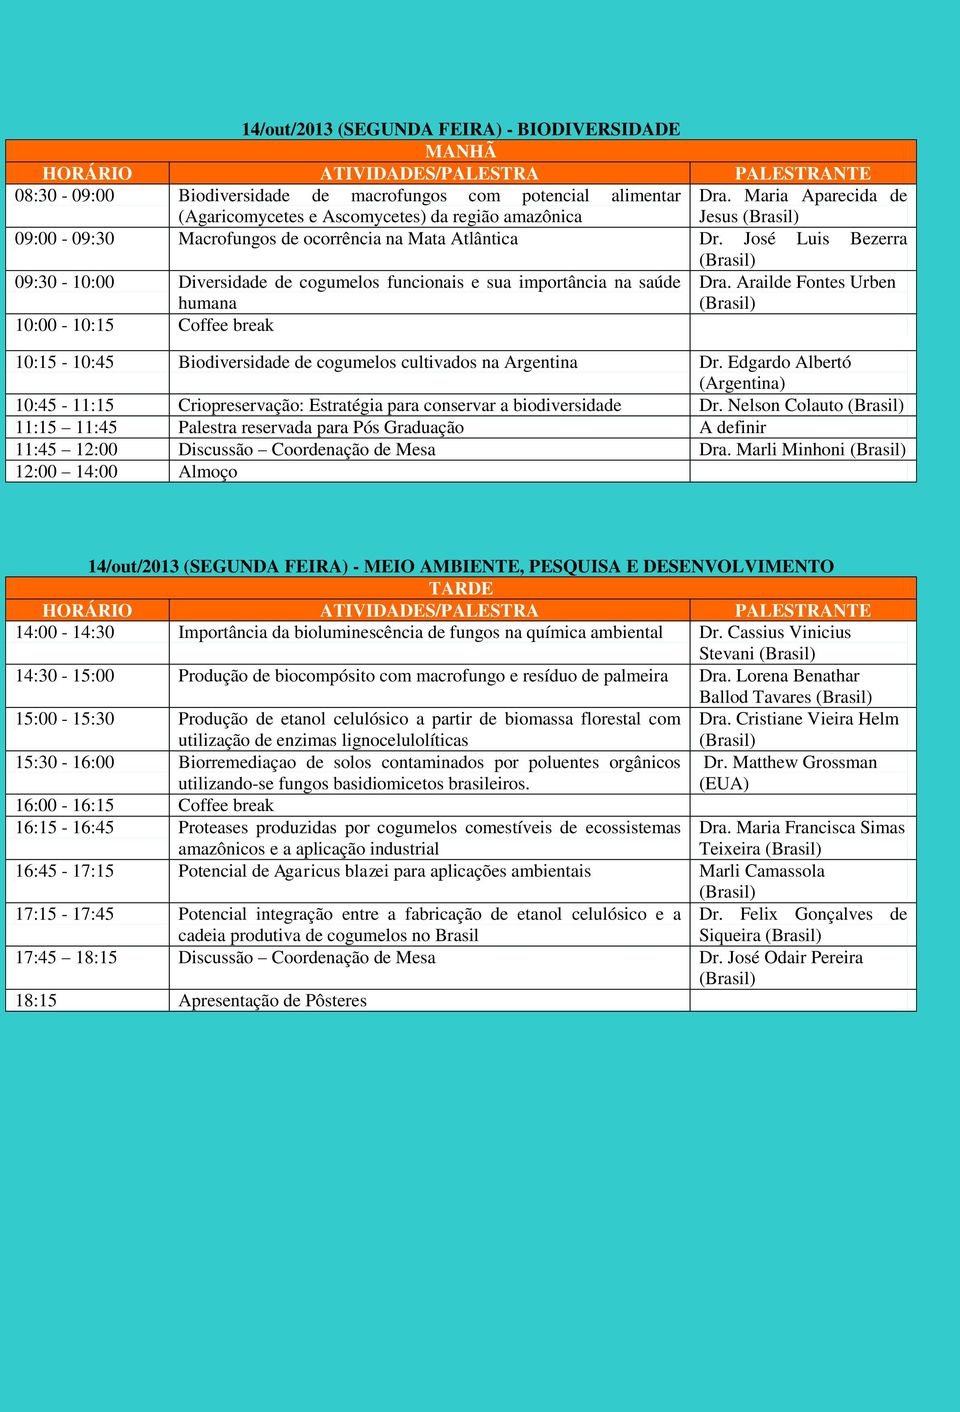 José Luis Bezerra 09:30-10:00 Diversidade de cogumelos funcionais e sua importância na saúde Dra.